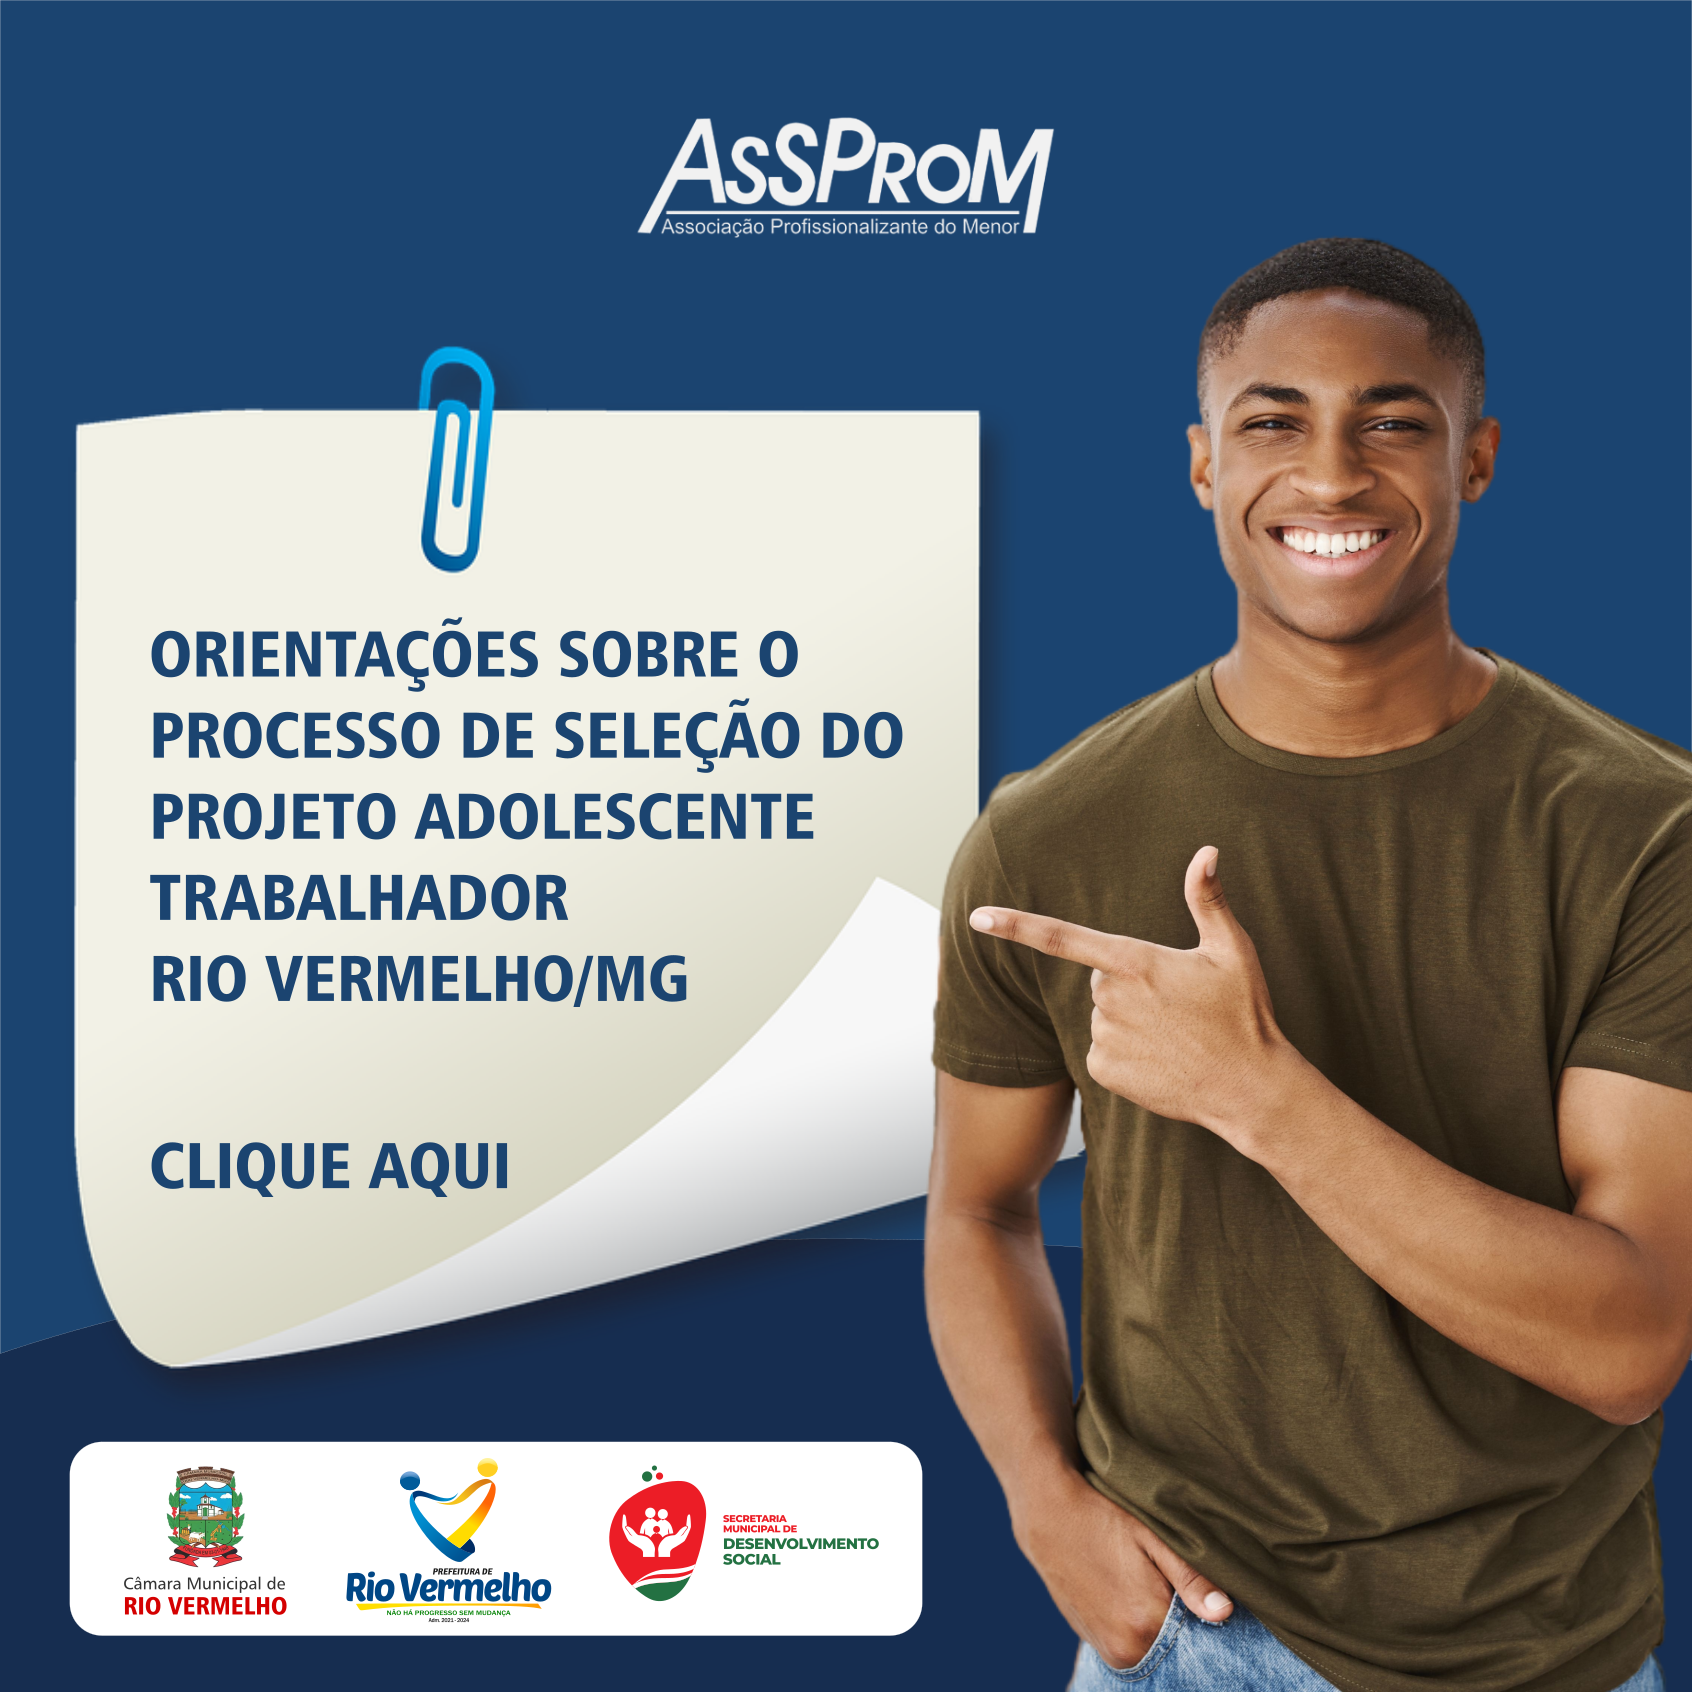 You are currently viewing PROJETO ADOLESCENTE TRABALHADOR – ORIENTAÇÕES SOBRE O PROCESSO DE SELEÇÃO